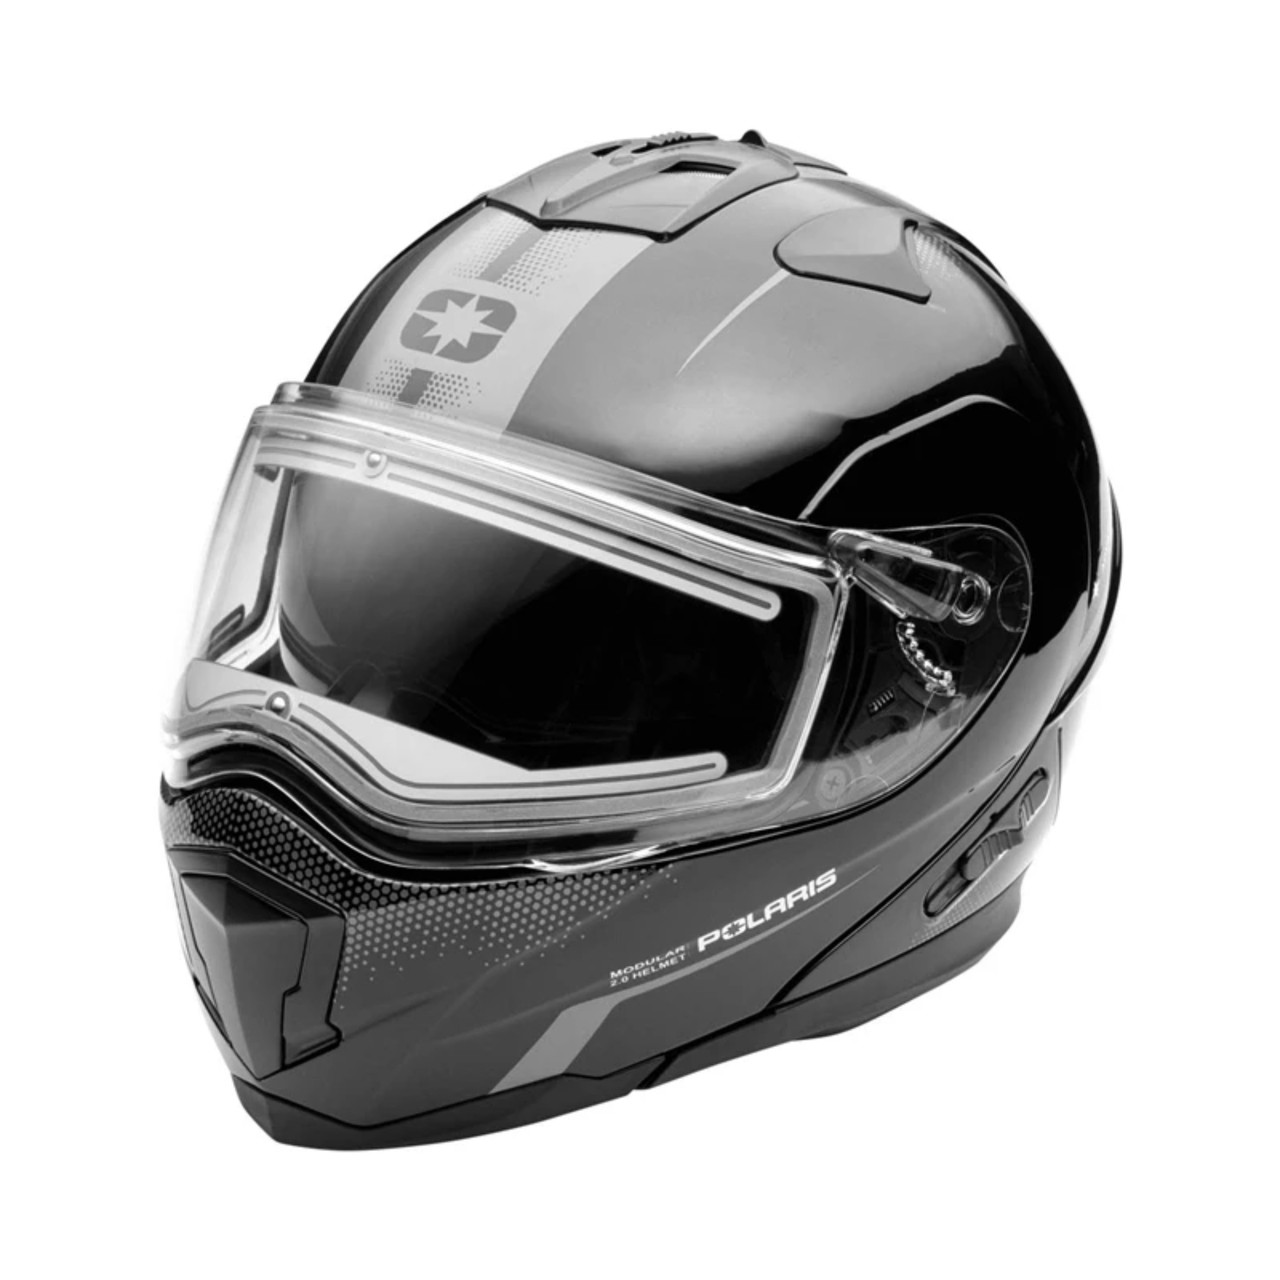 Polaris New OEM Modular 2.0 Helmet, Adult Large, 283316606